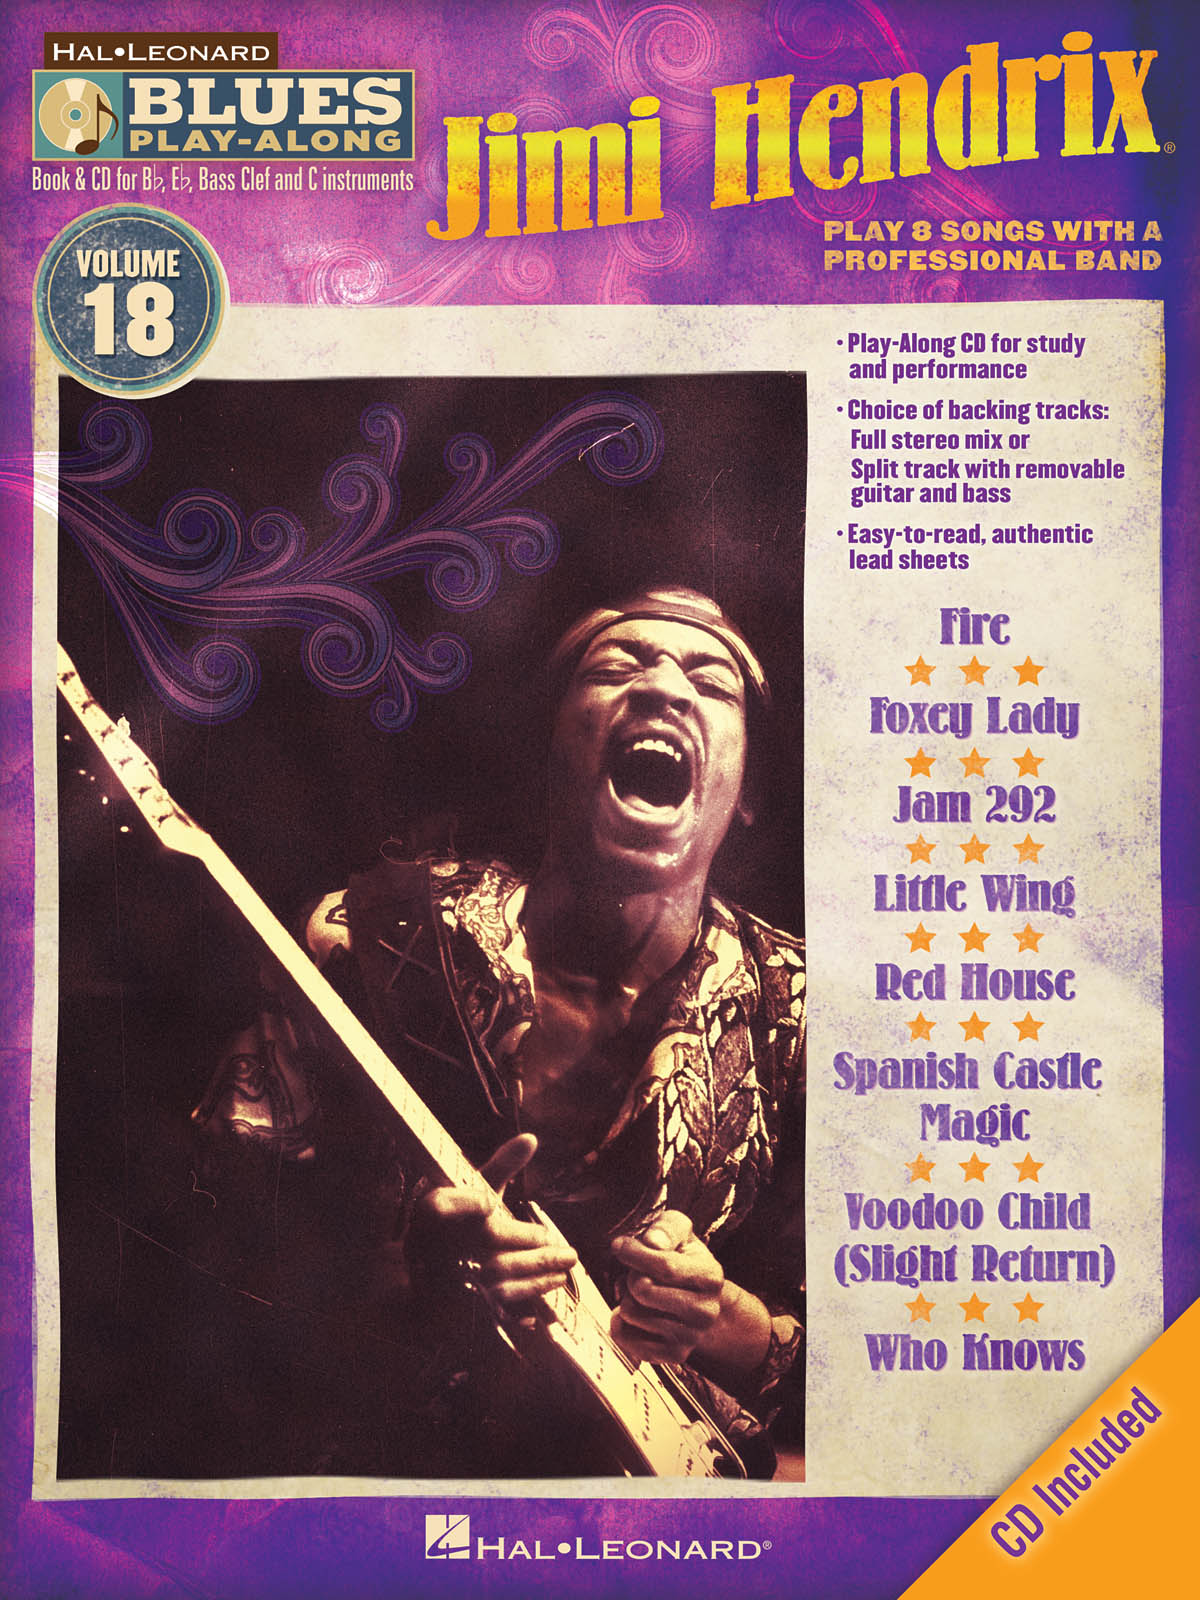 Jimi Hendrix - Blues Play-Along Volume 18 - melodie s akordy pro nástroje v ladění C